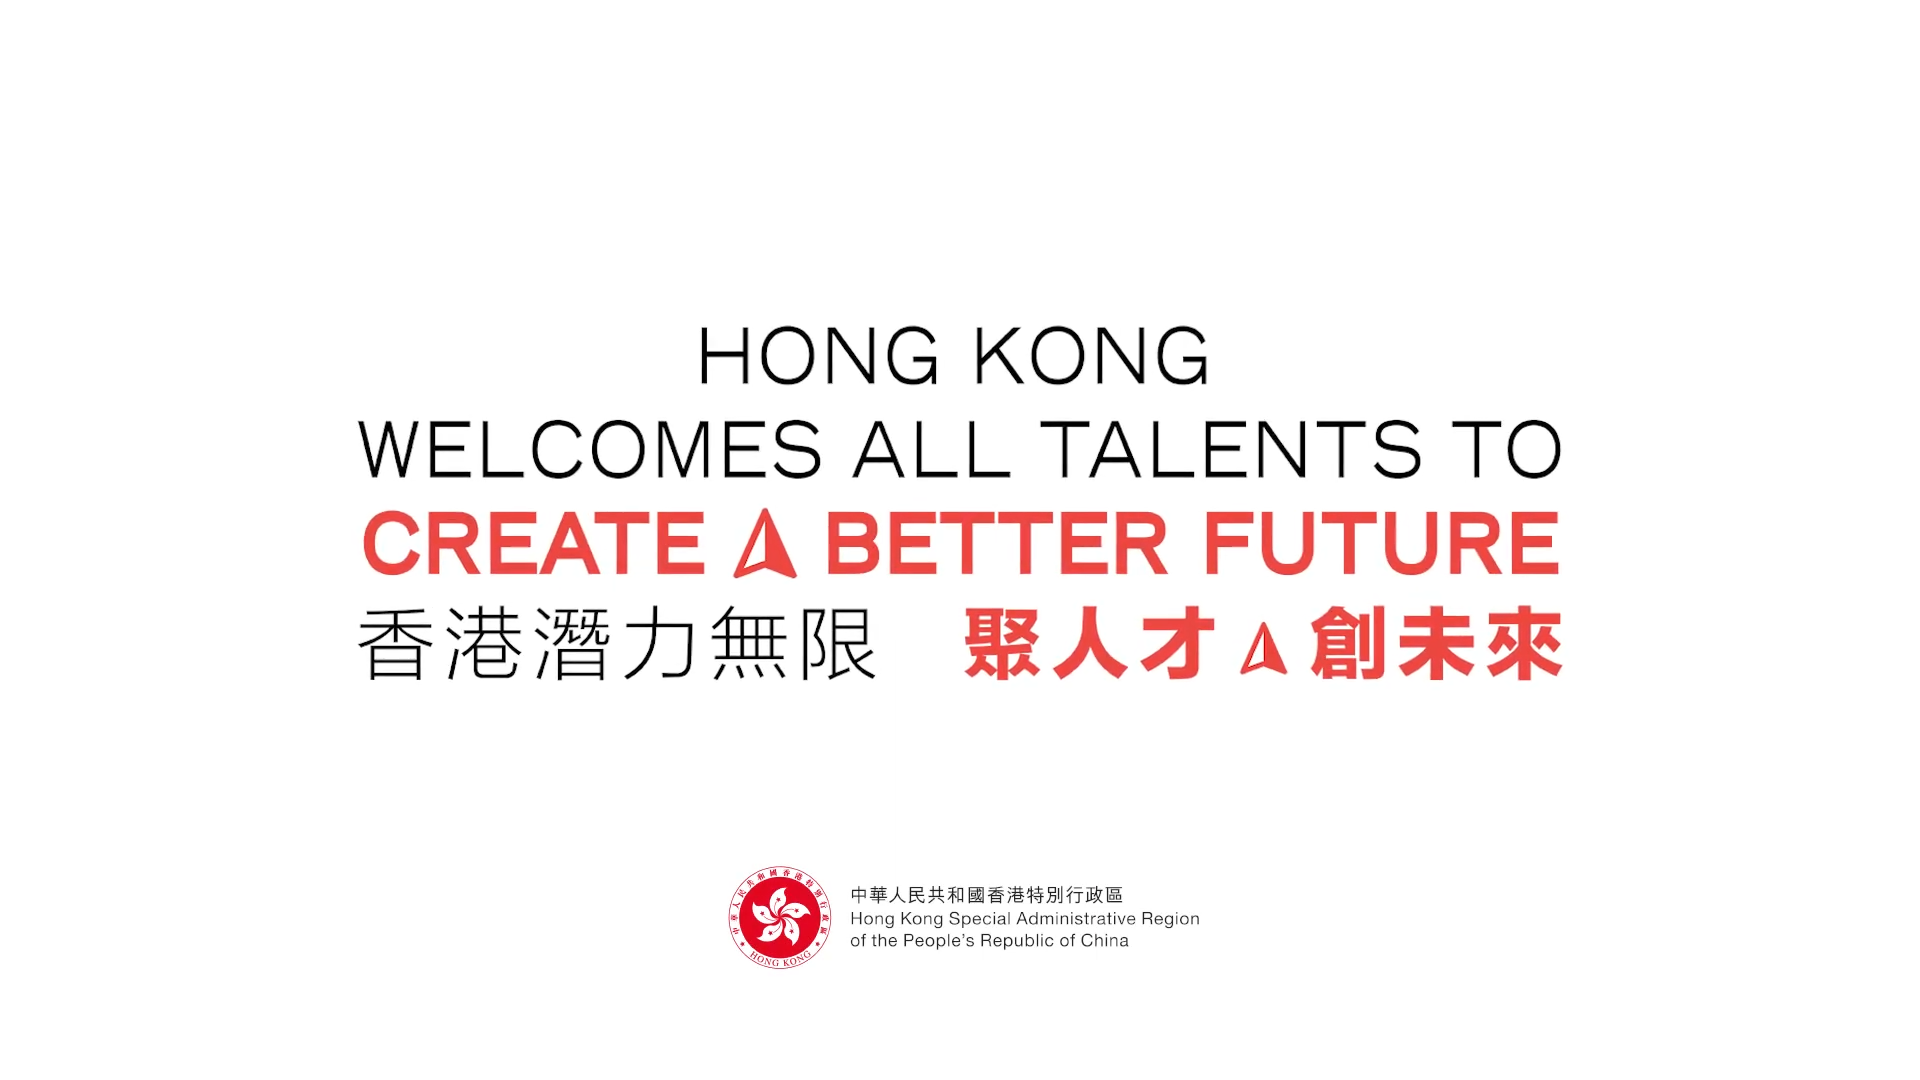 HK calling global talents (Dec 2022)